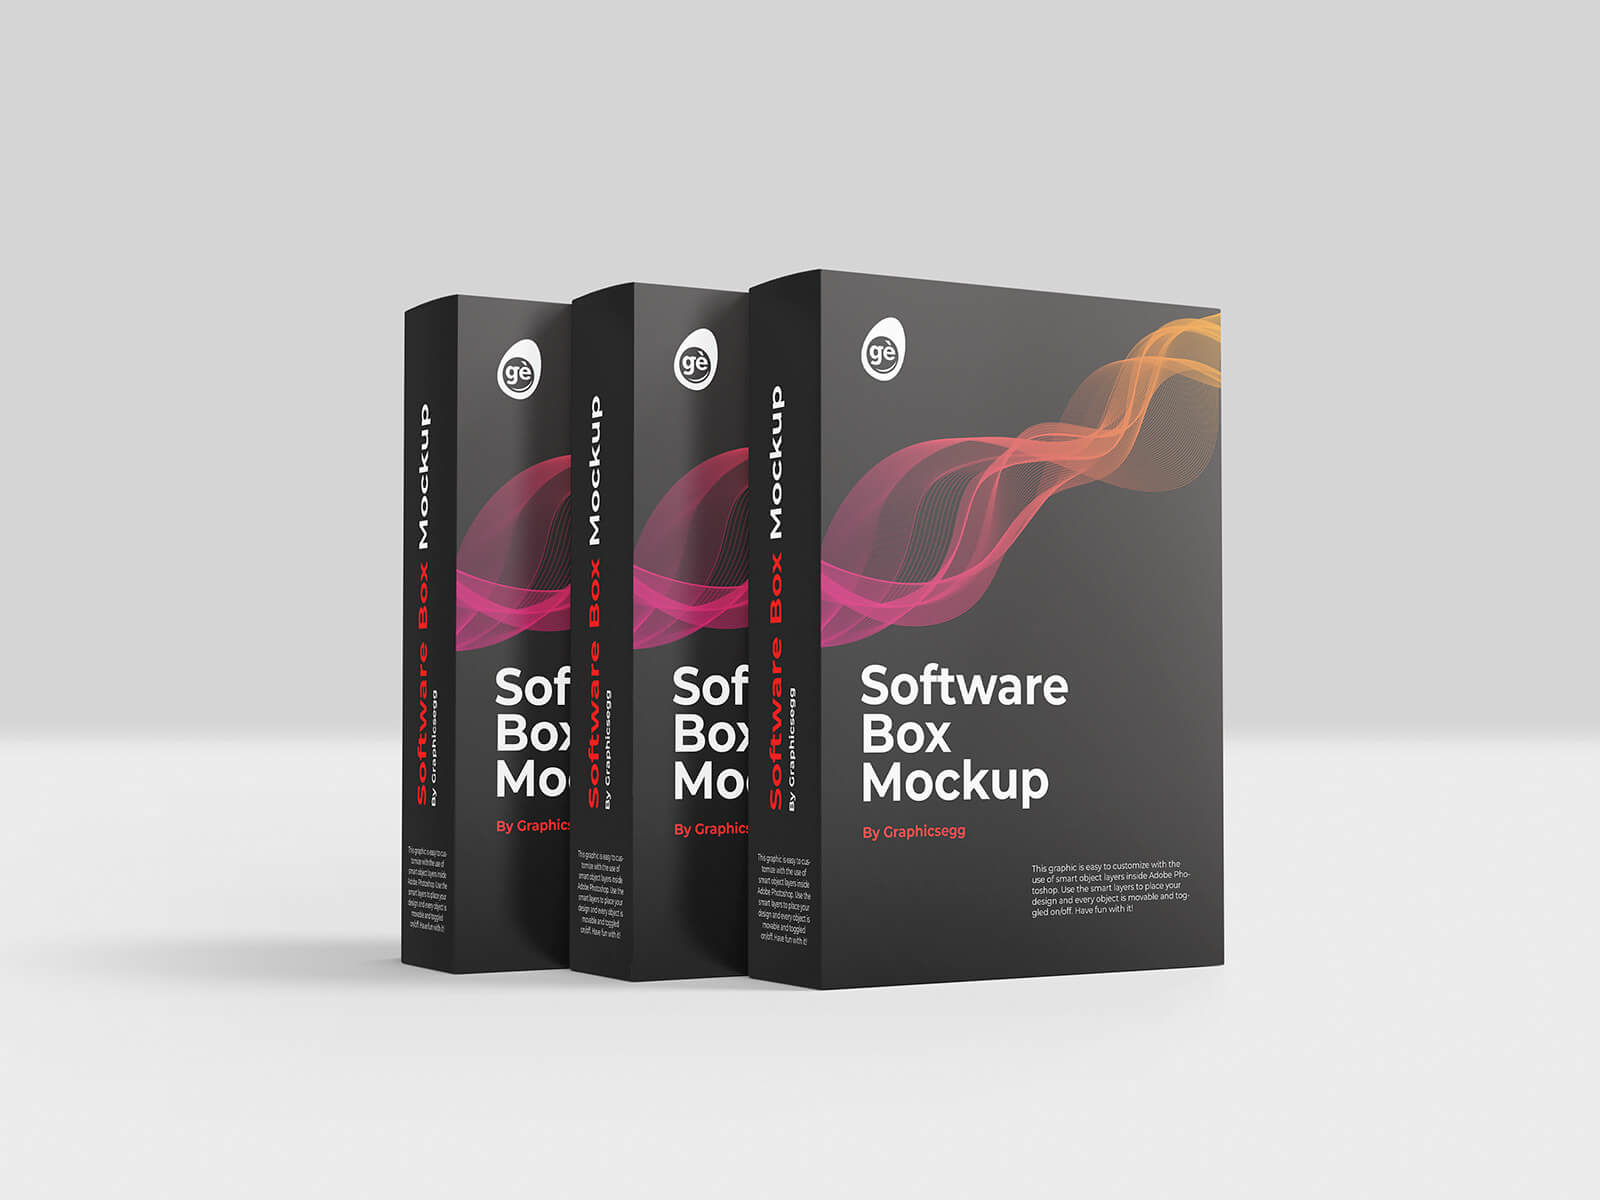 Free-Software-Box-Mockup-PSD